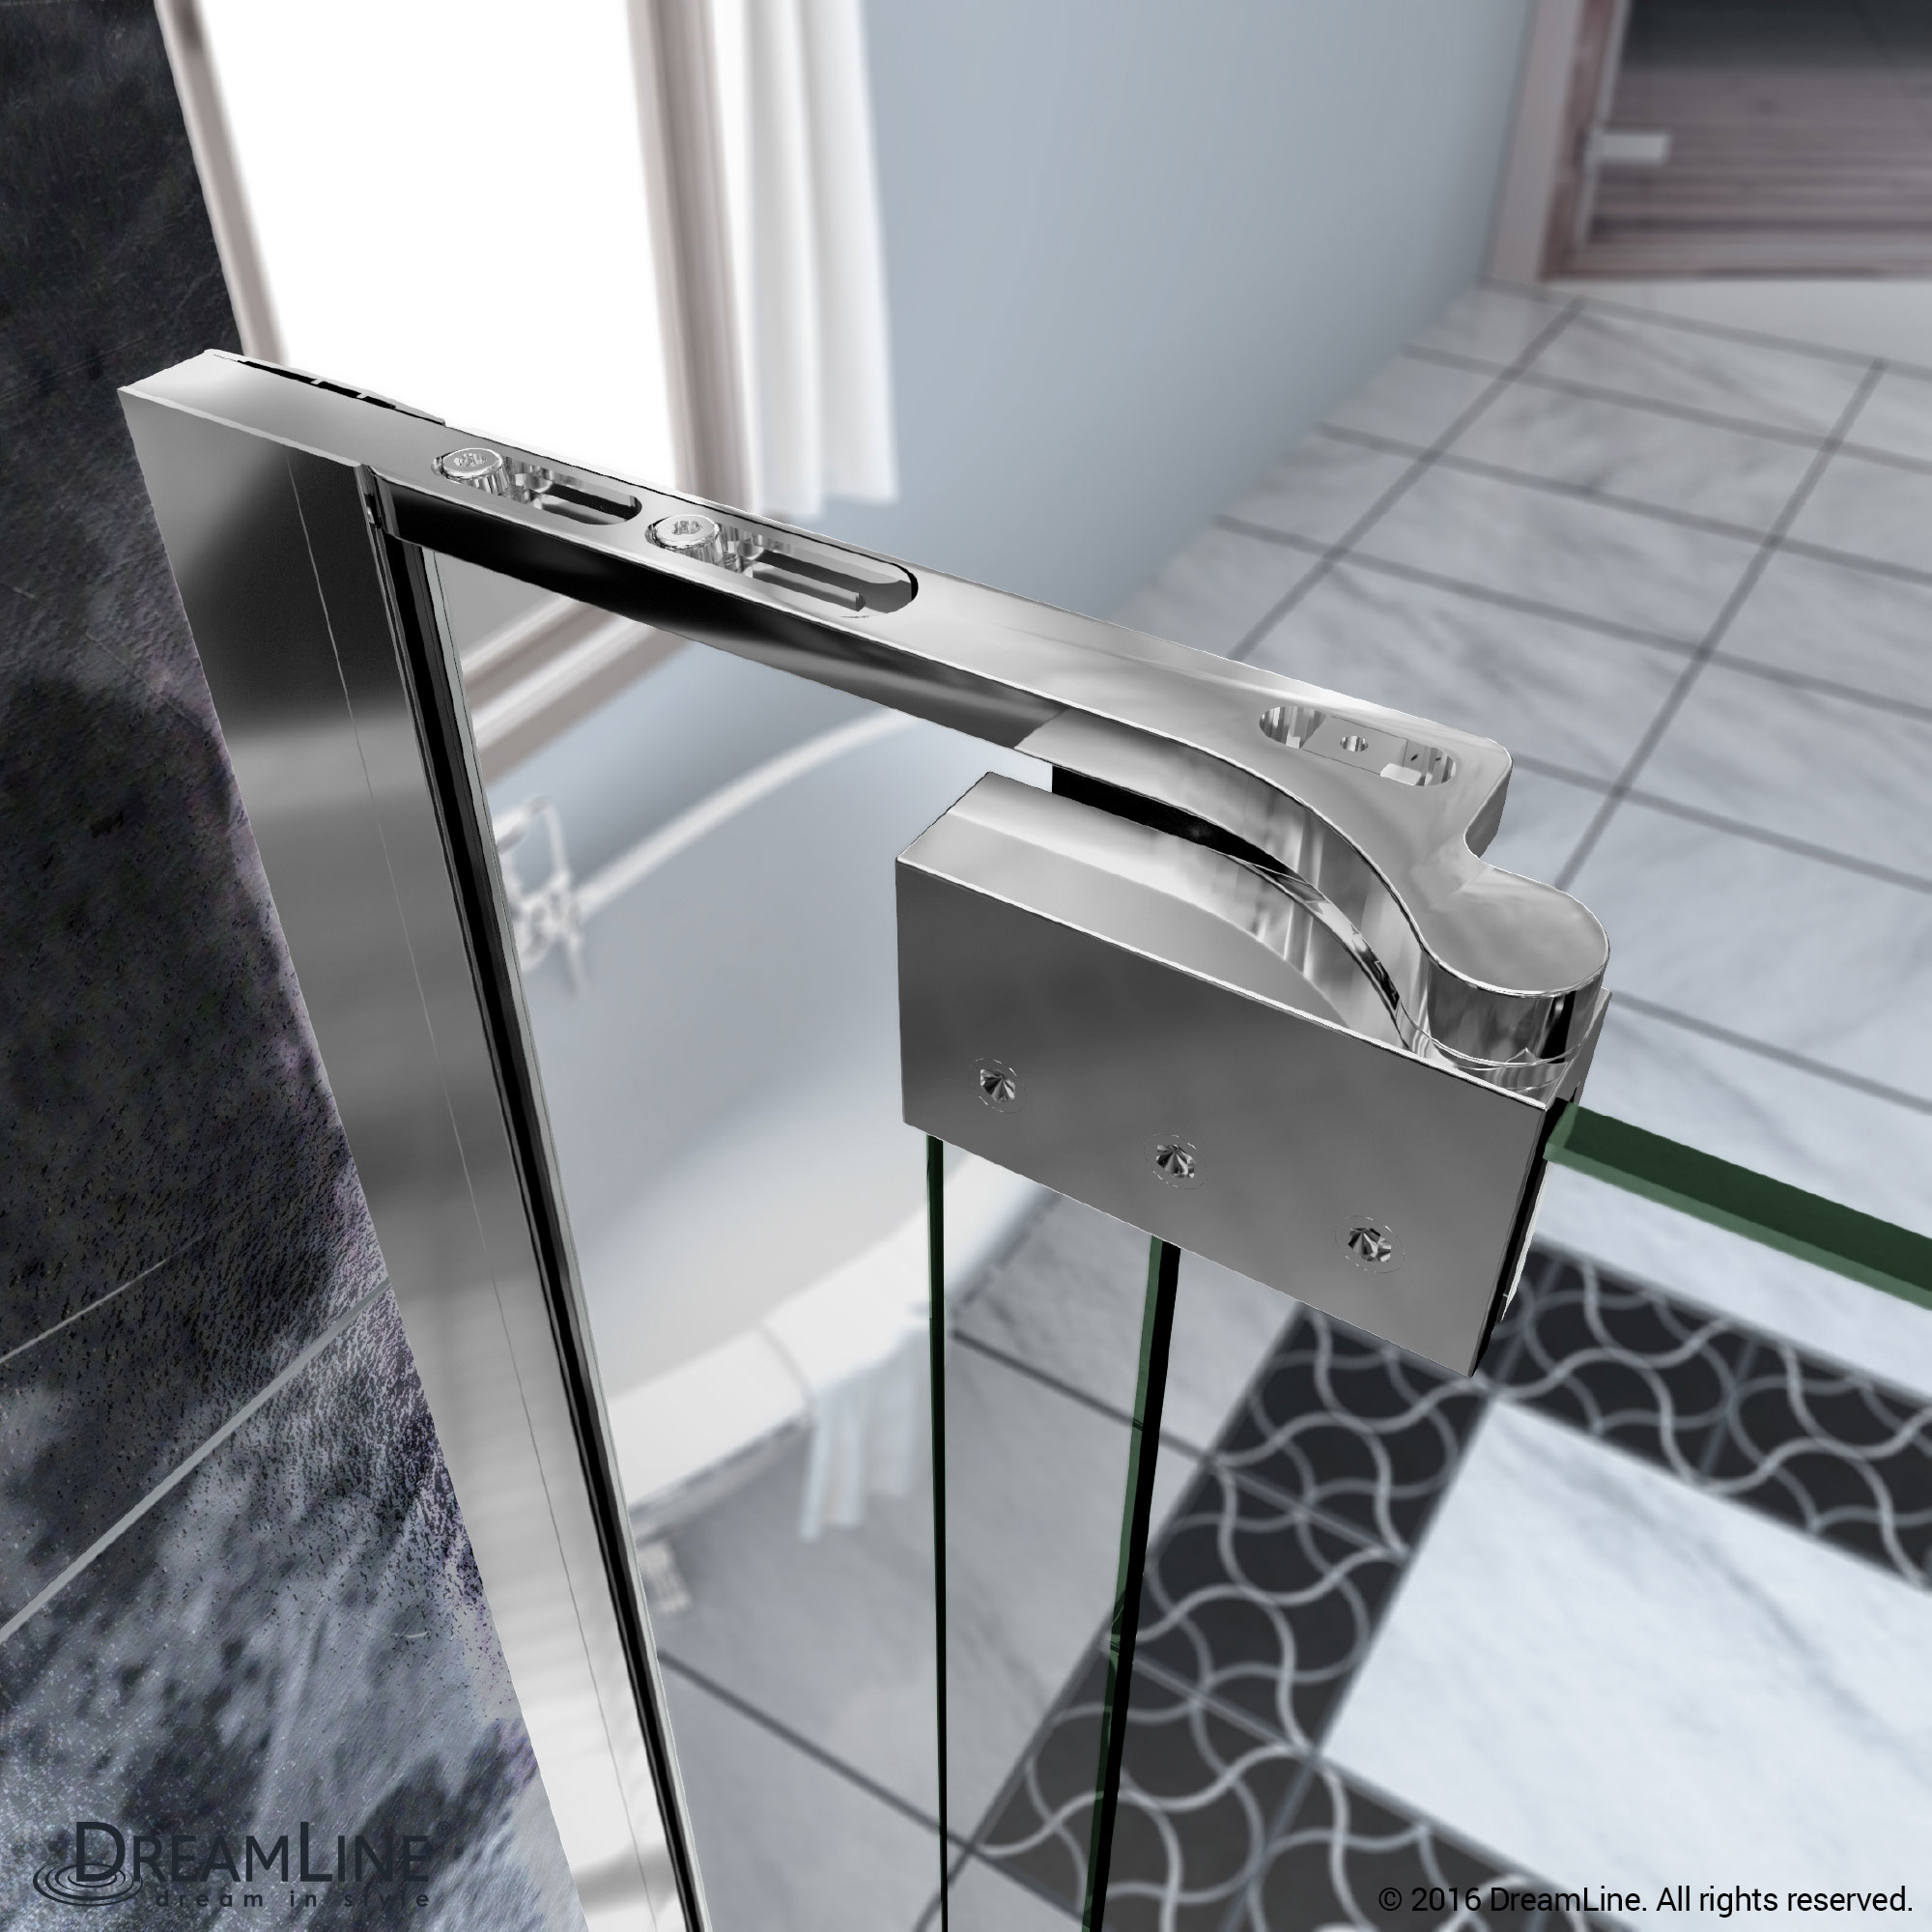 DreamLine SHDR-4235728-01 Allure 35 to 36 in. Frameless Pivot Clear Glass Shower Door In Chrome